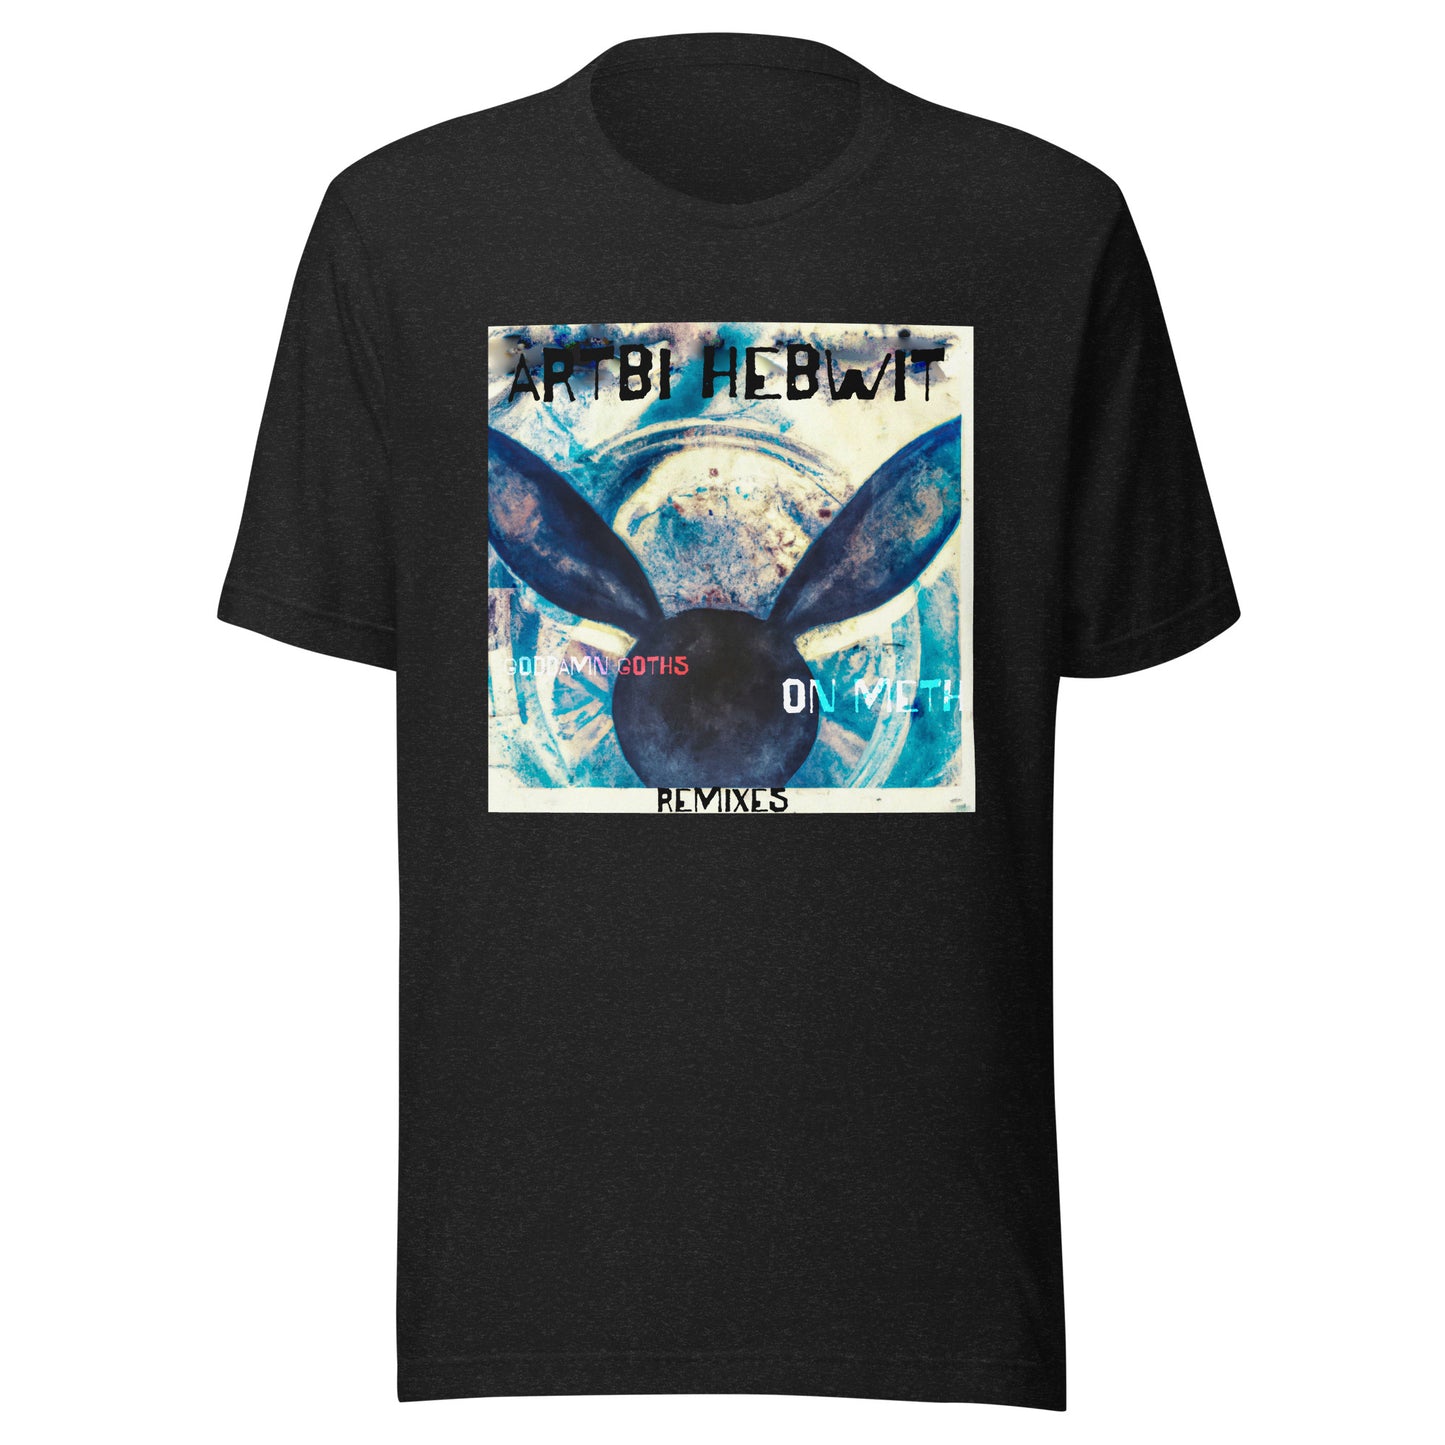 ARTBI HEBWIT - Unisex t-shirt